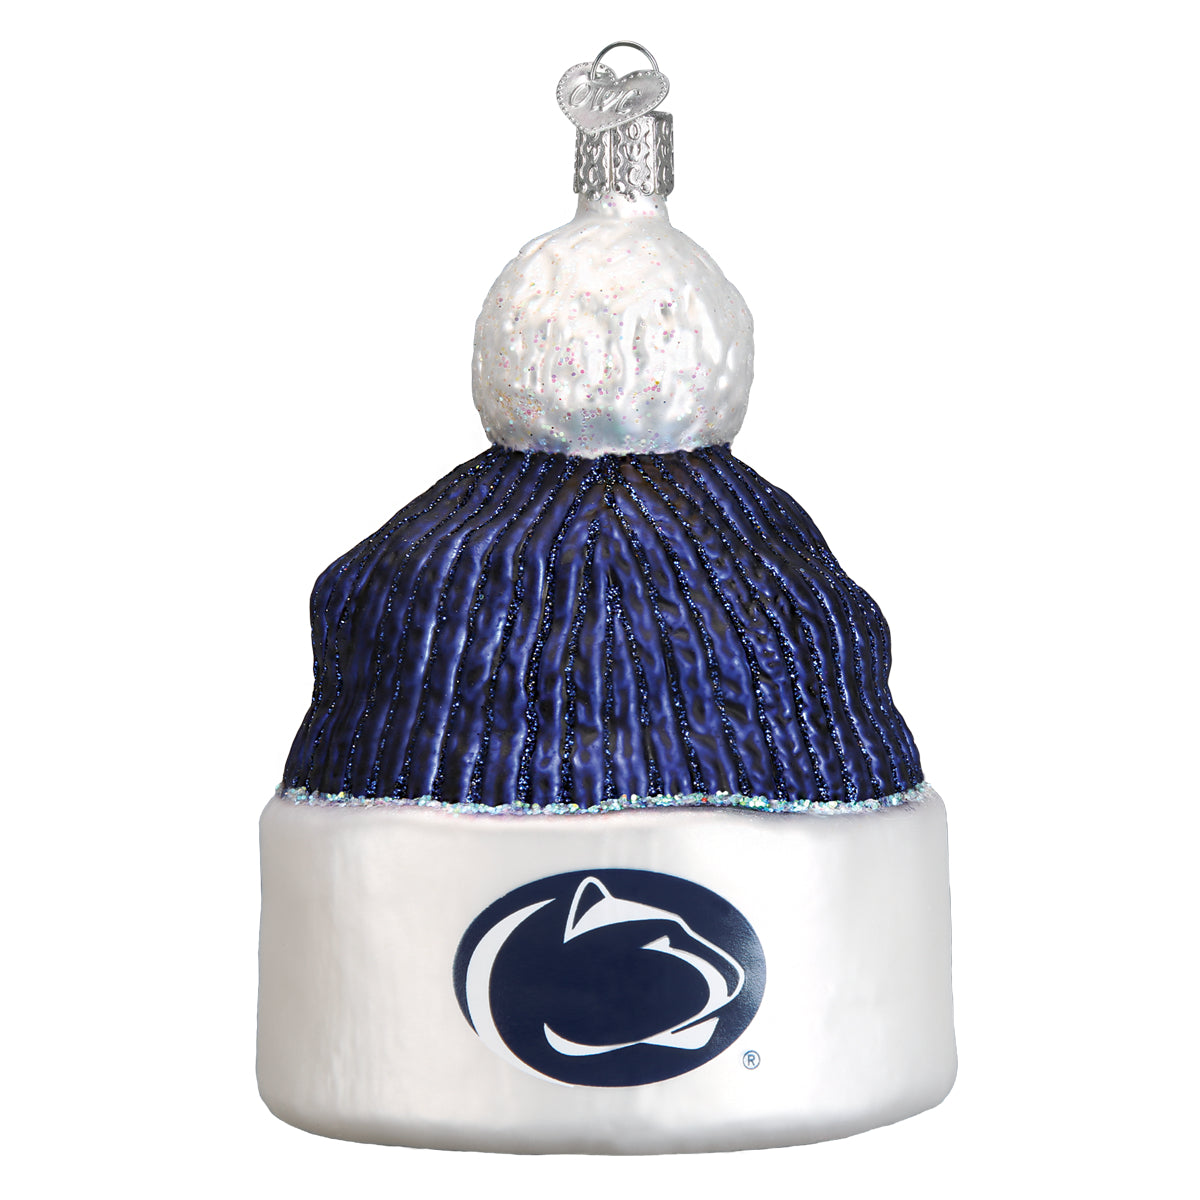 Penn State Beanie Ornament